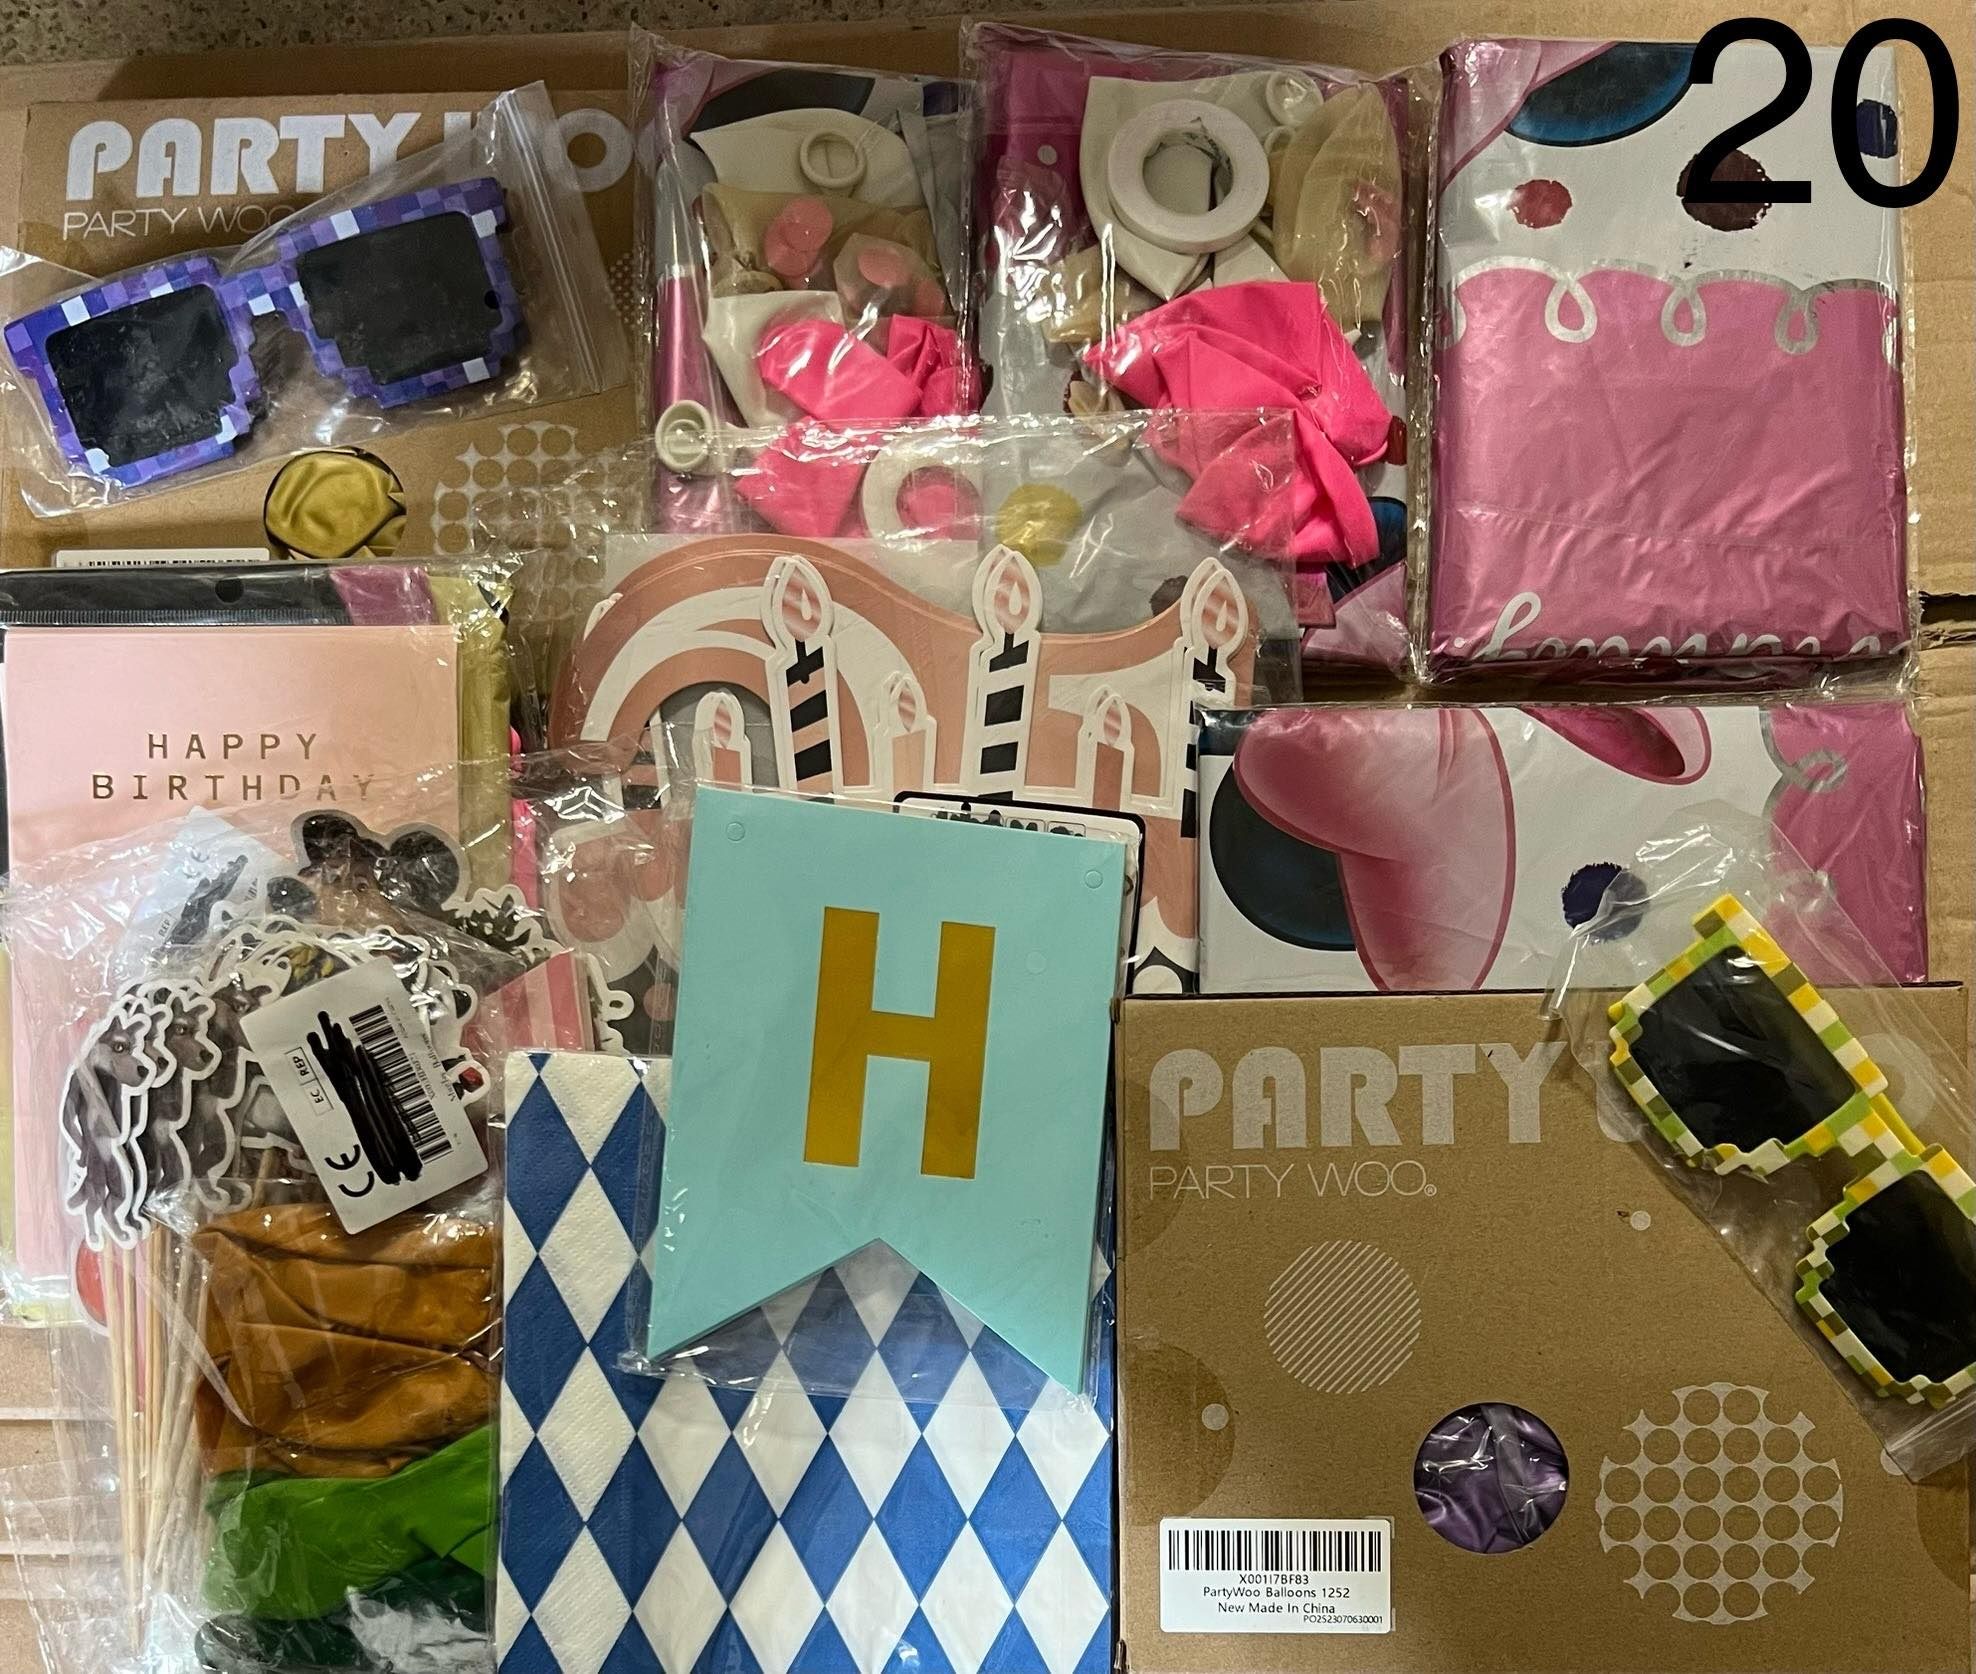 Box imprezowy urodzinowy balony foliowe i zwykłe plus dekoracje